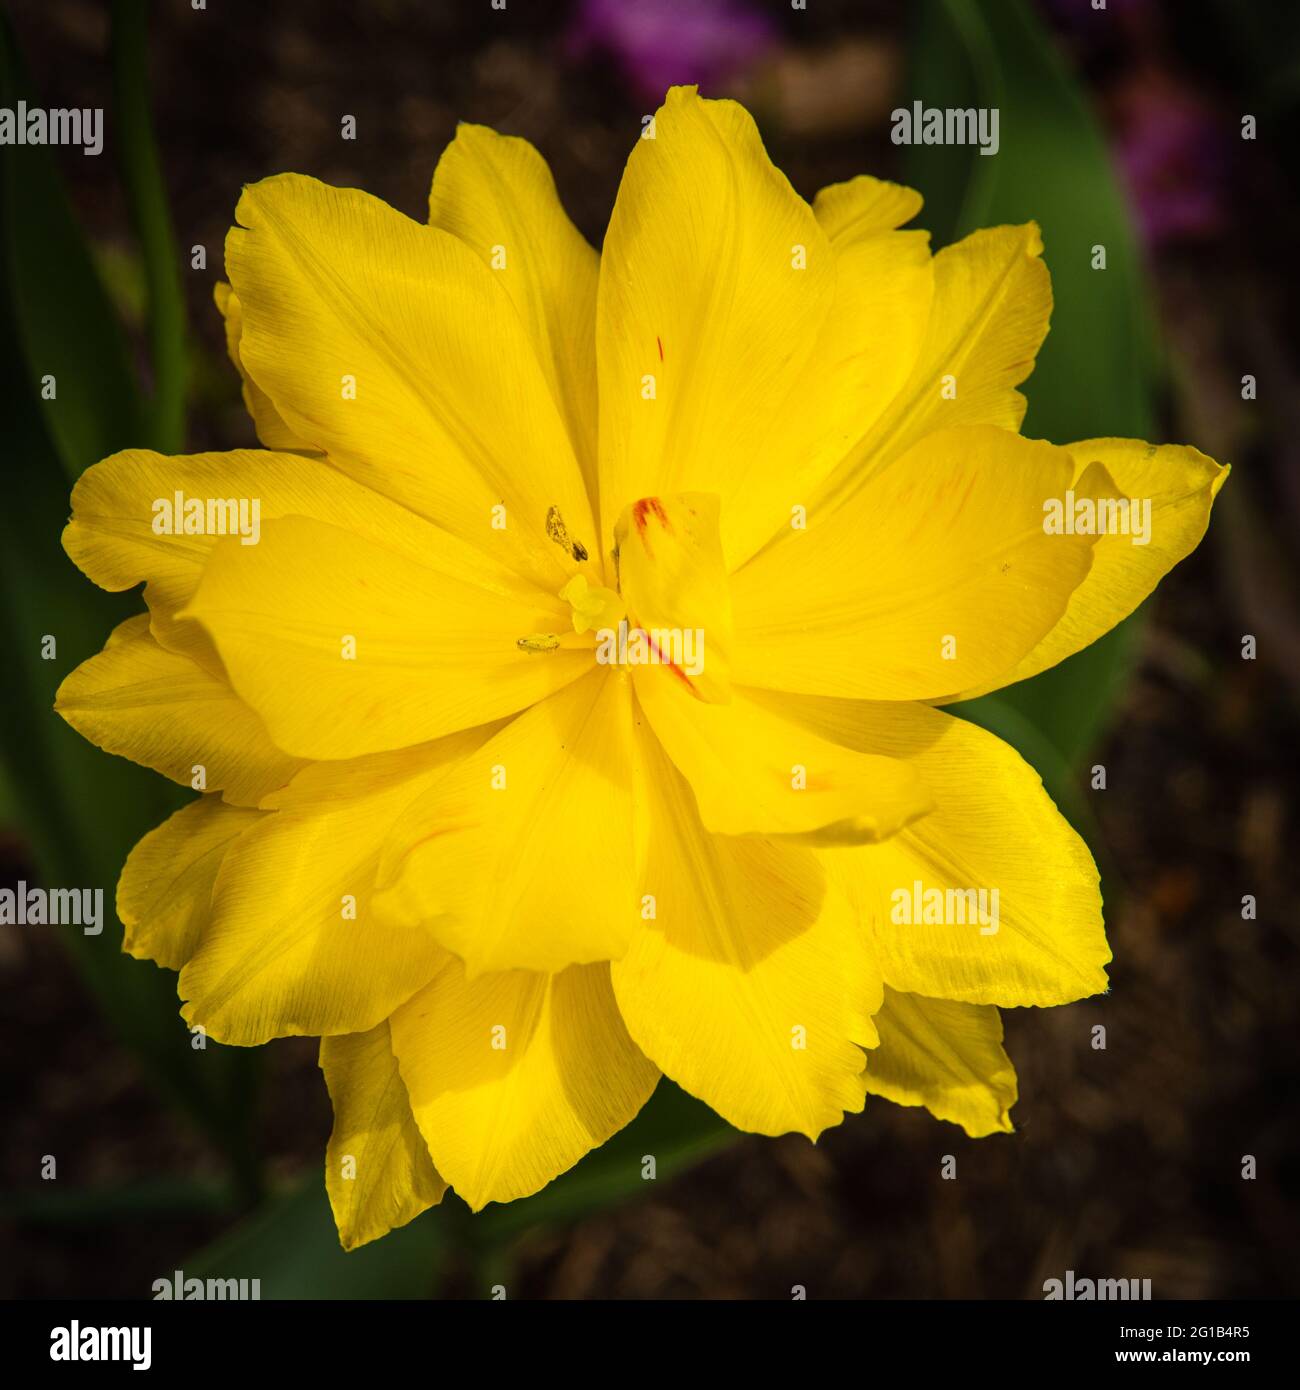 Leuchtend goldgelbe Tulpe in voller Blüte geöffnet Stockfoto